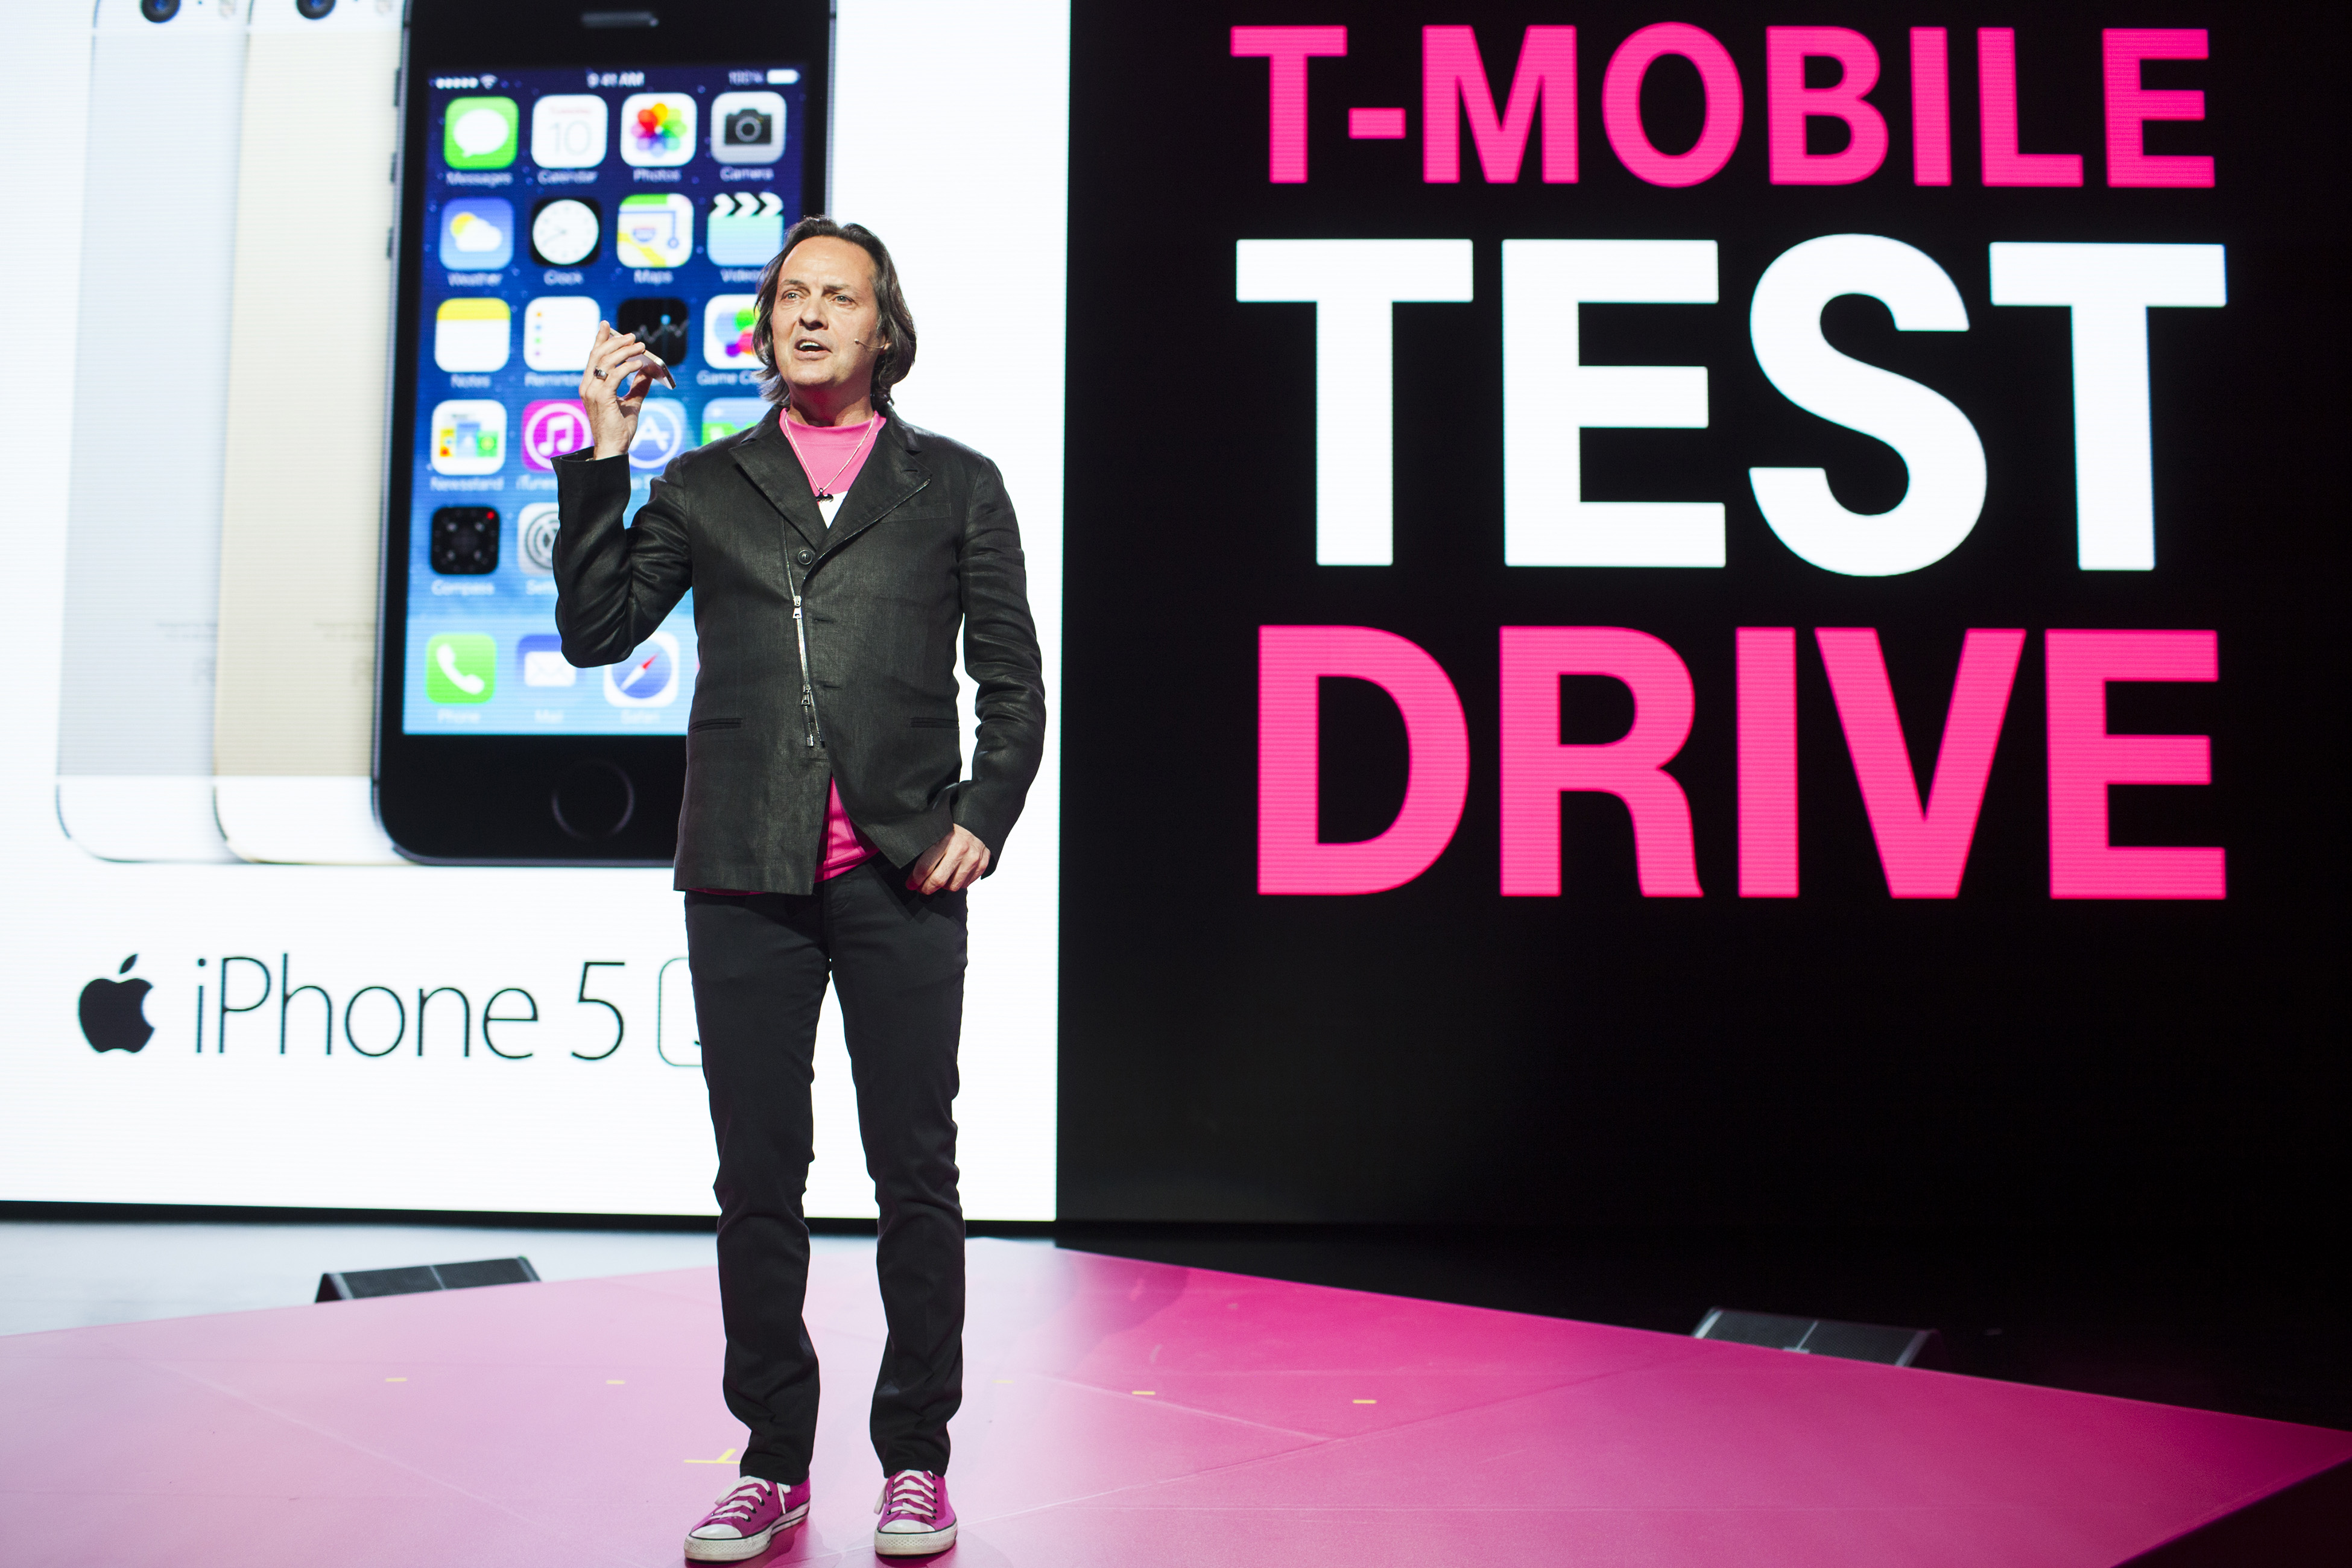 T-Mobile's John Legere